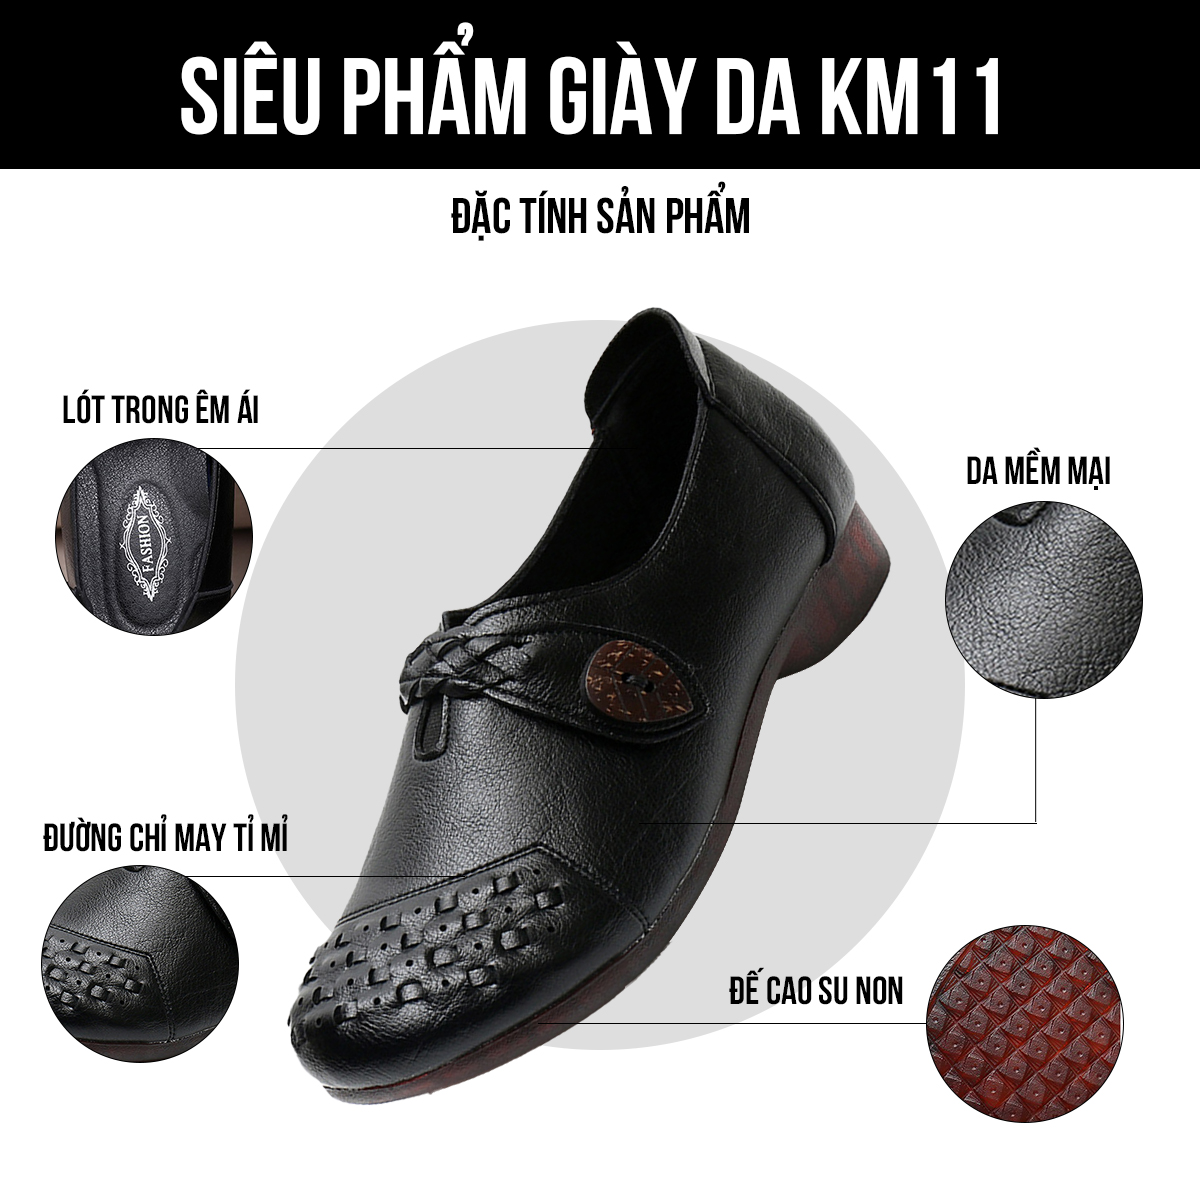 Giày lười nữ KM11 đặc tính sản phẩm